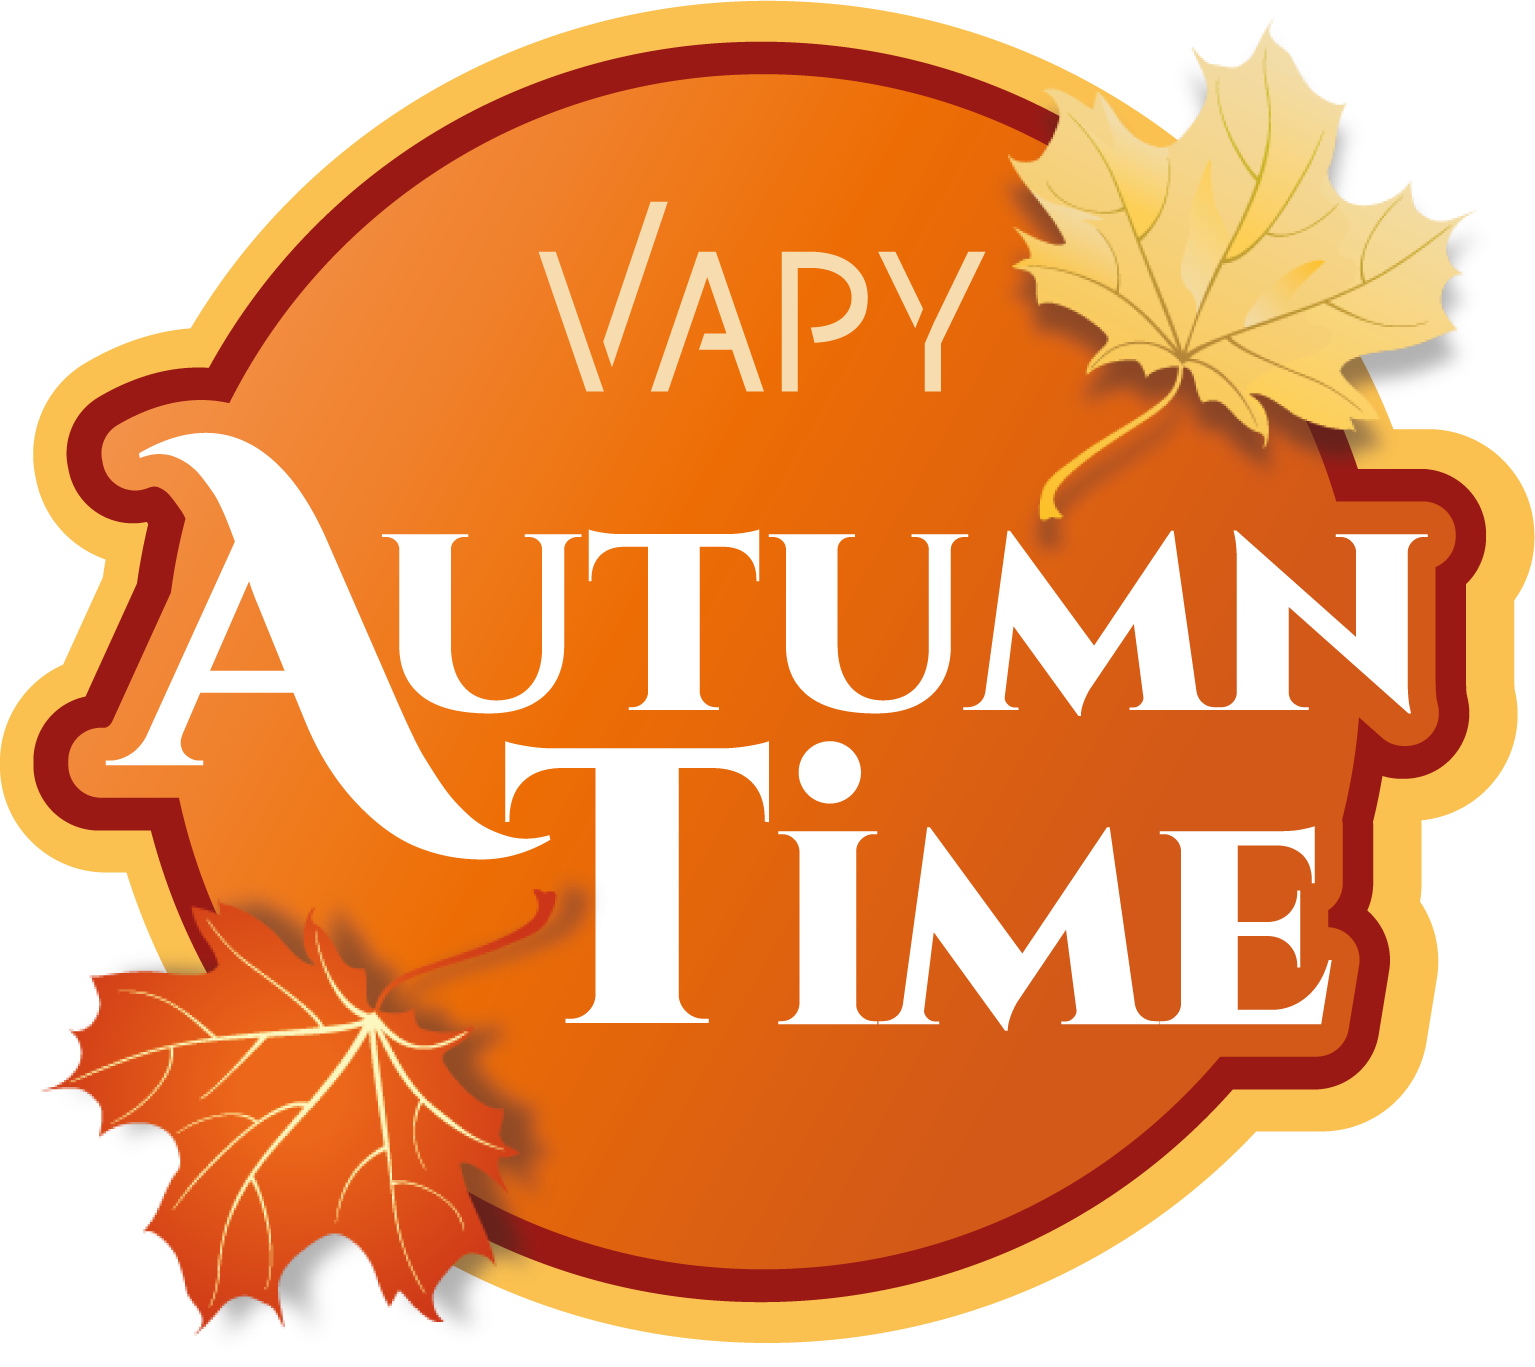 vapy_autumn_time